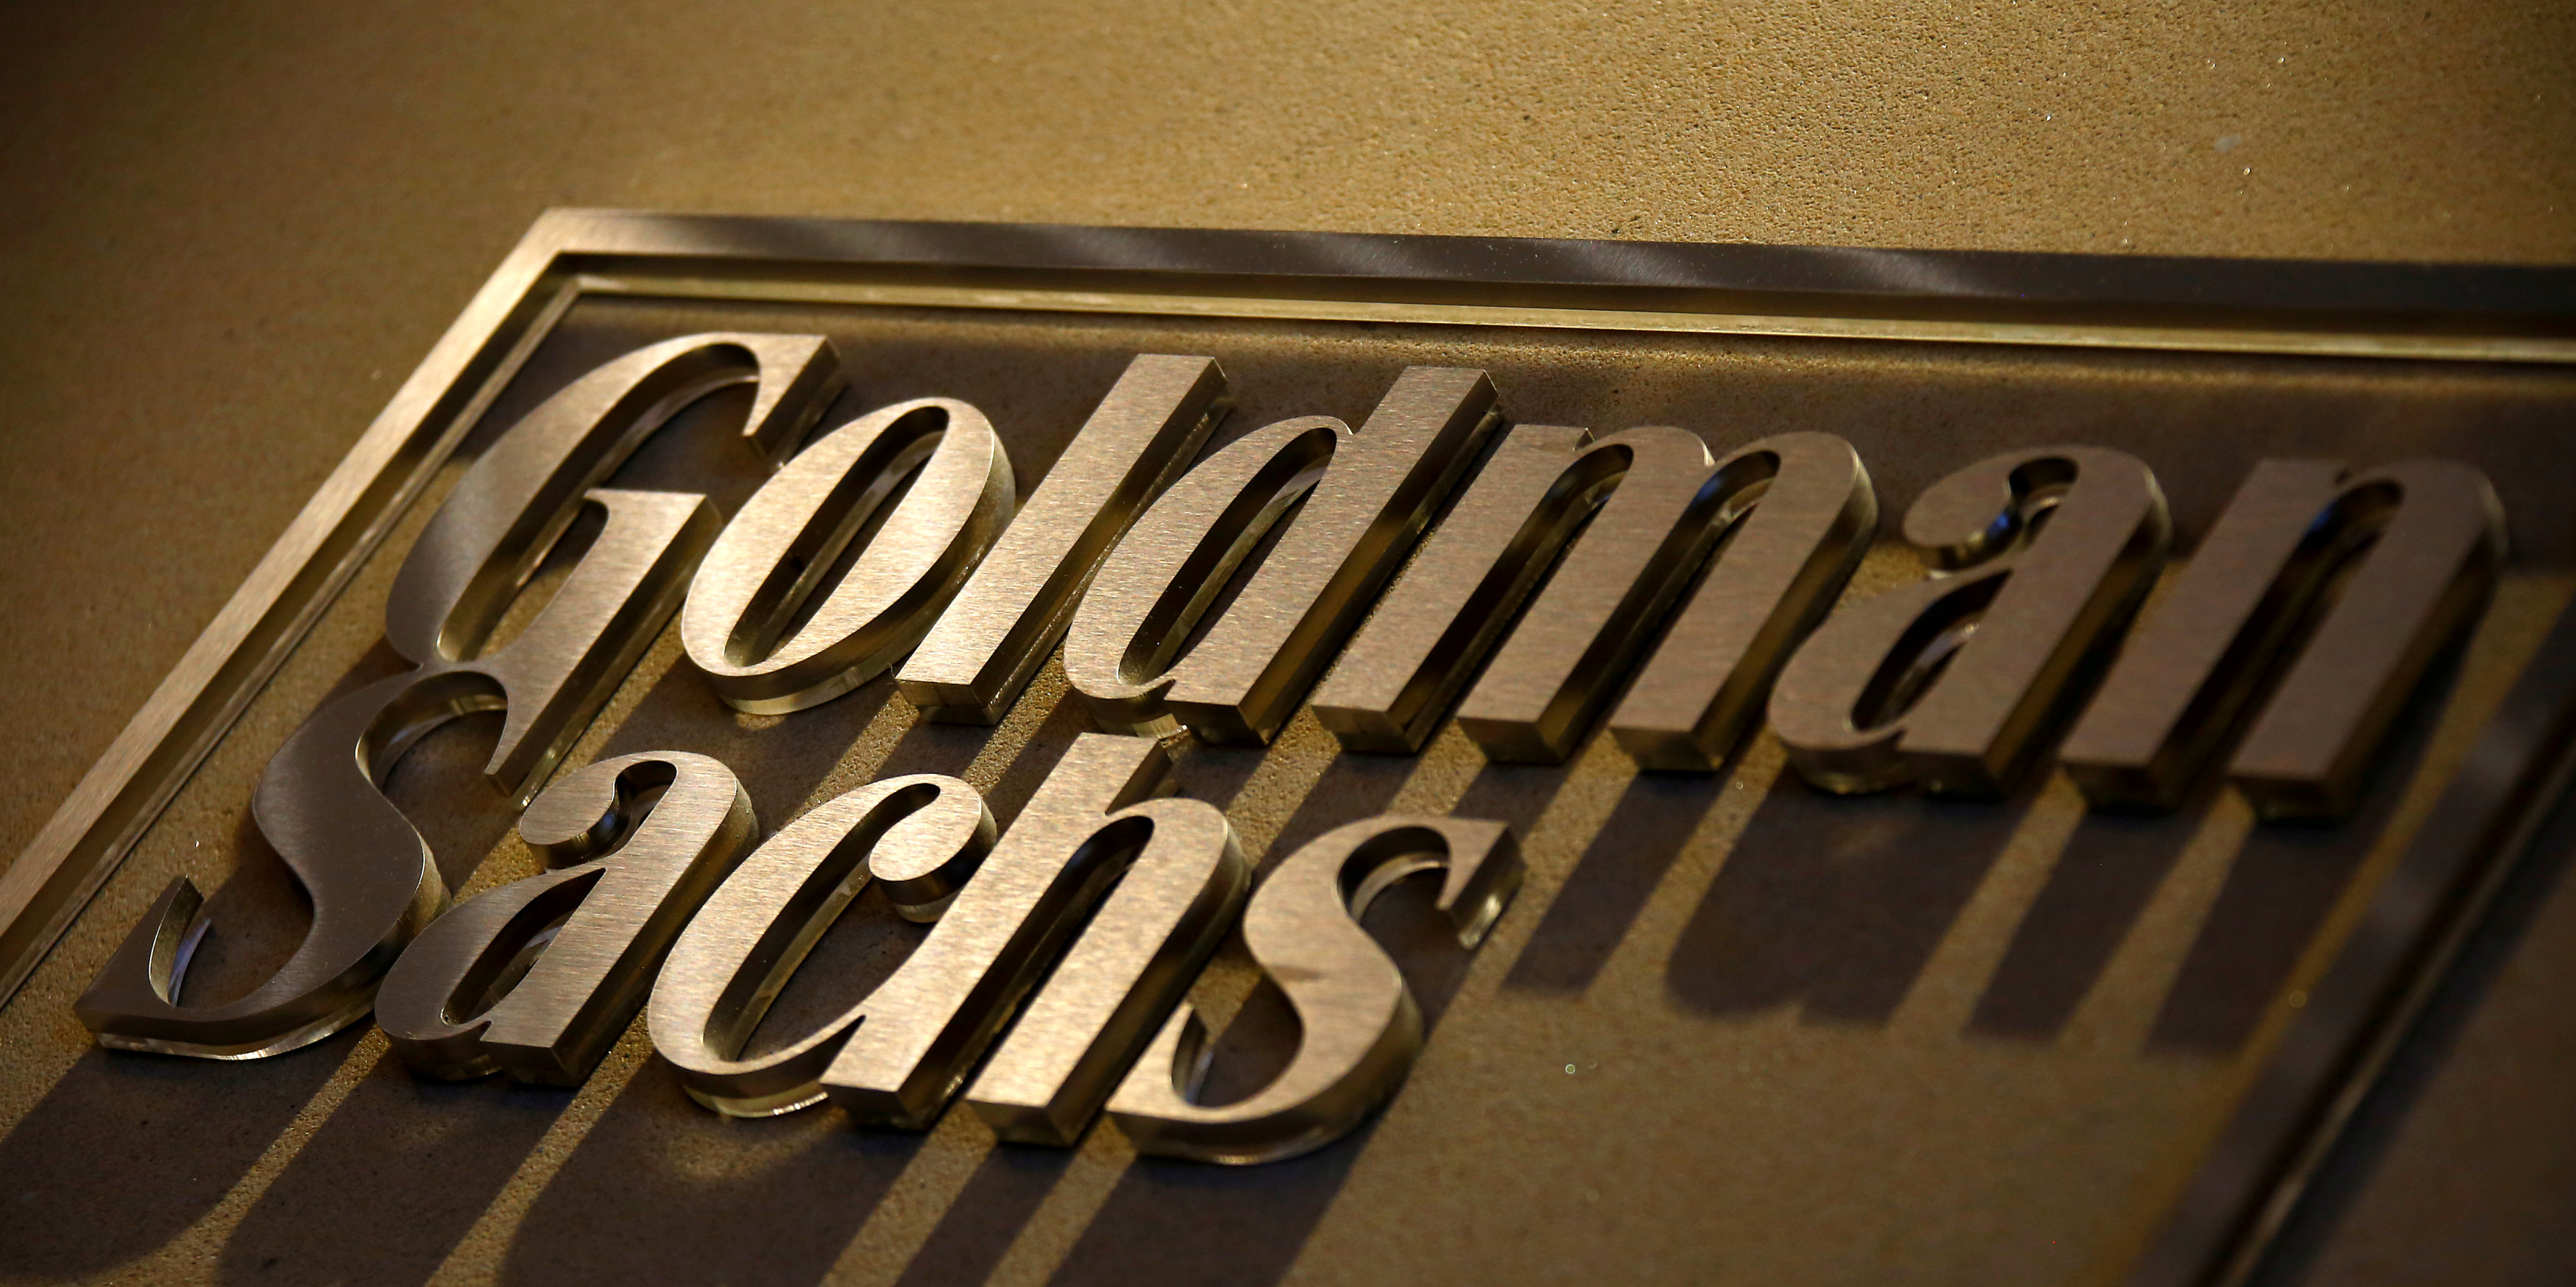 Goldman quita el puesto a Morgan Stanley como mayor asesor mundial de M&A